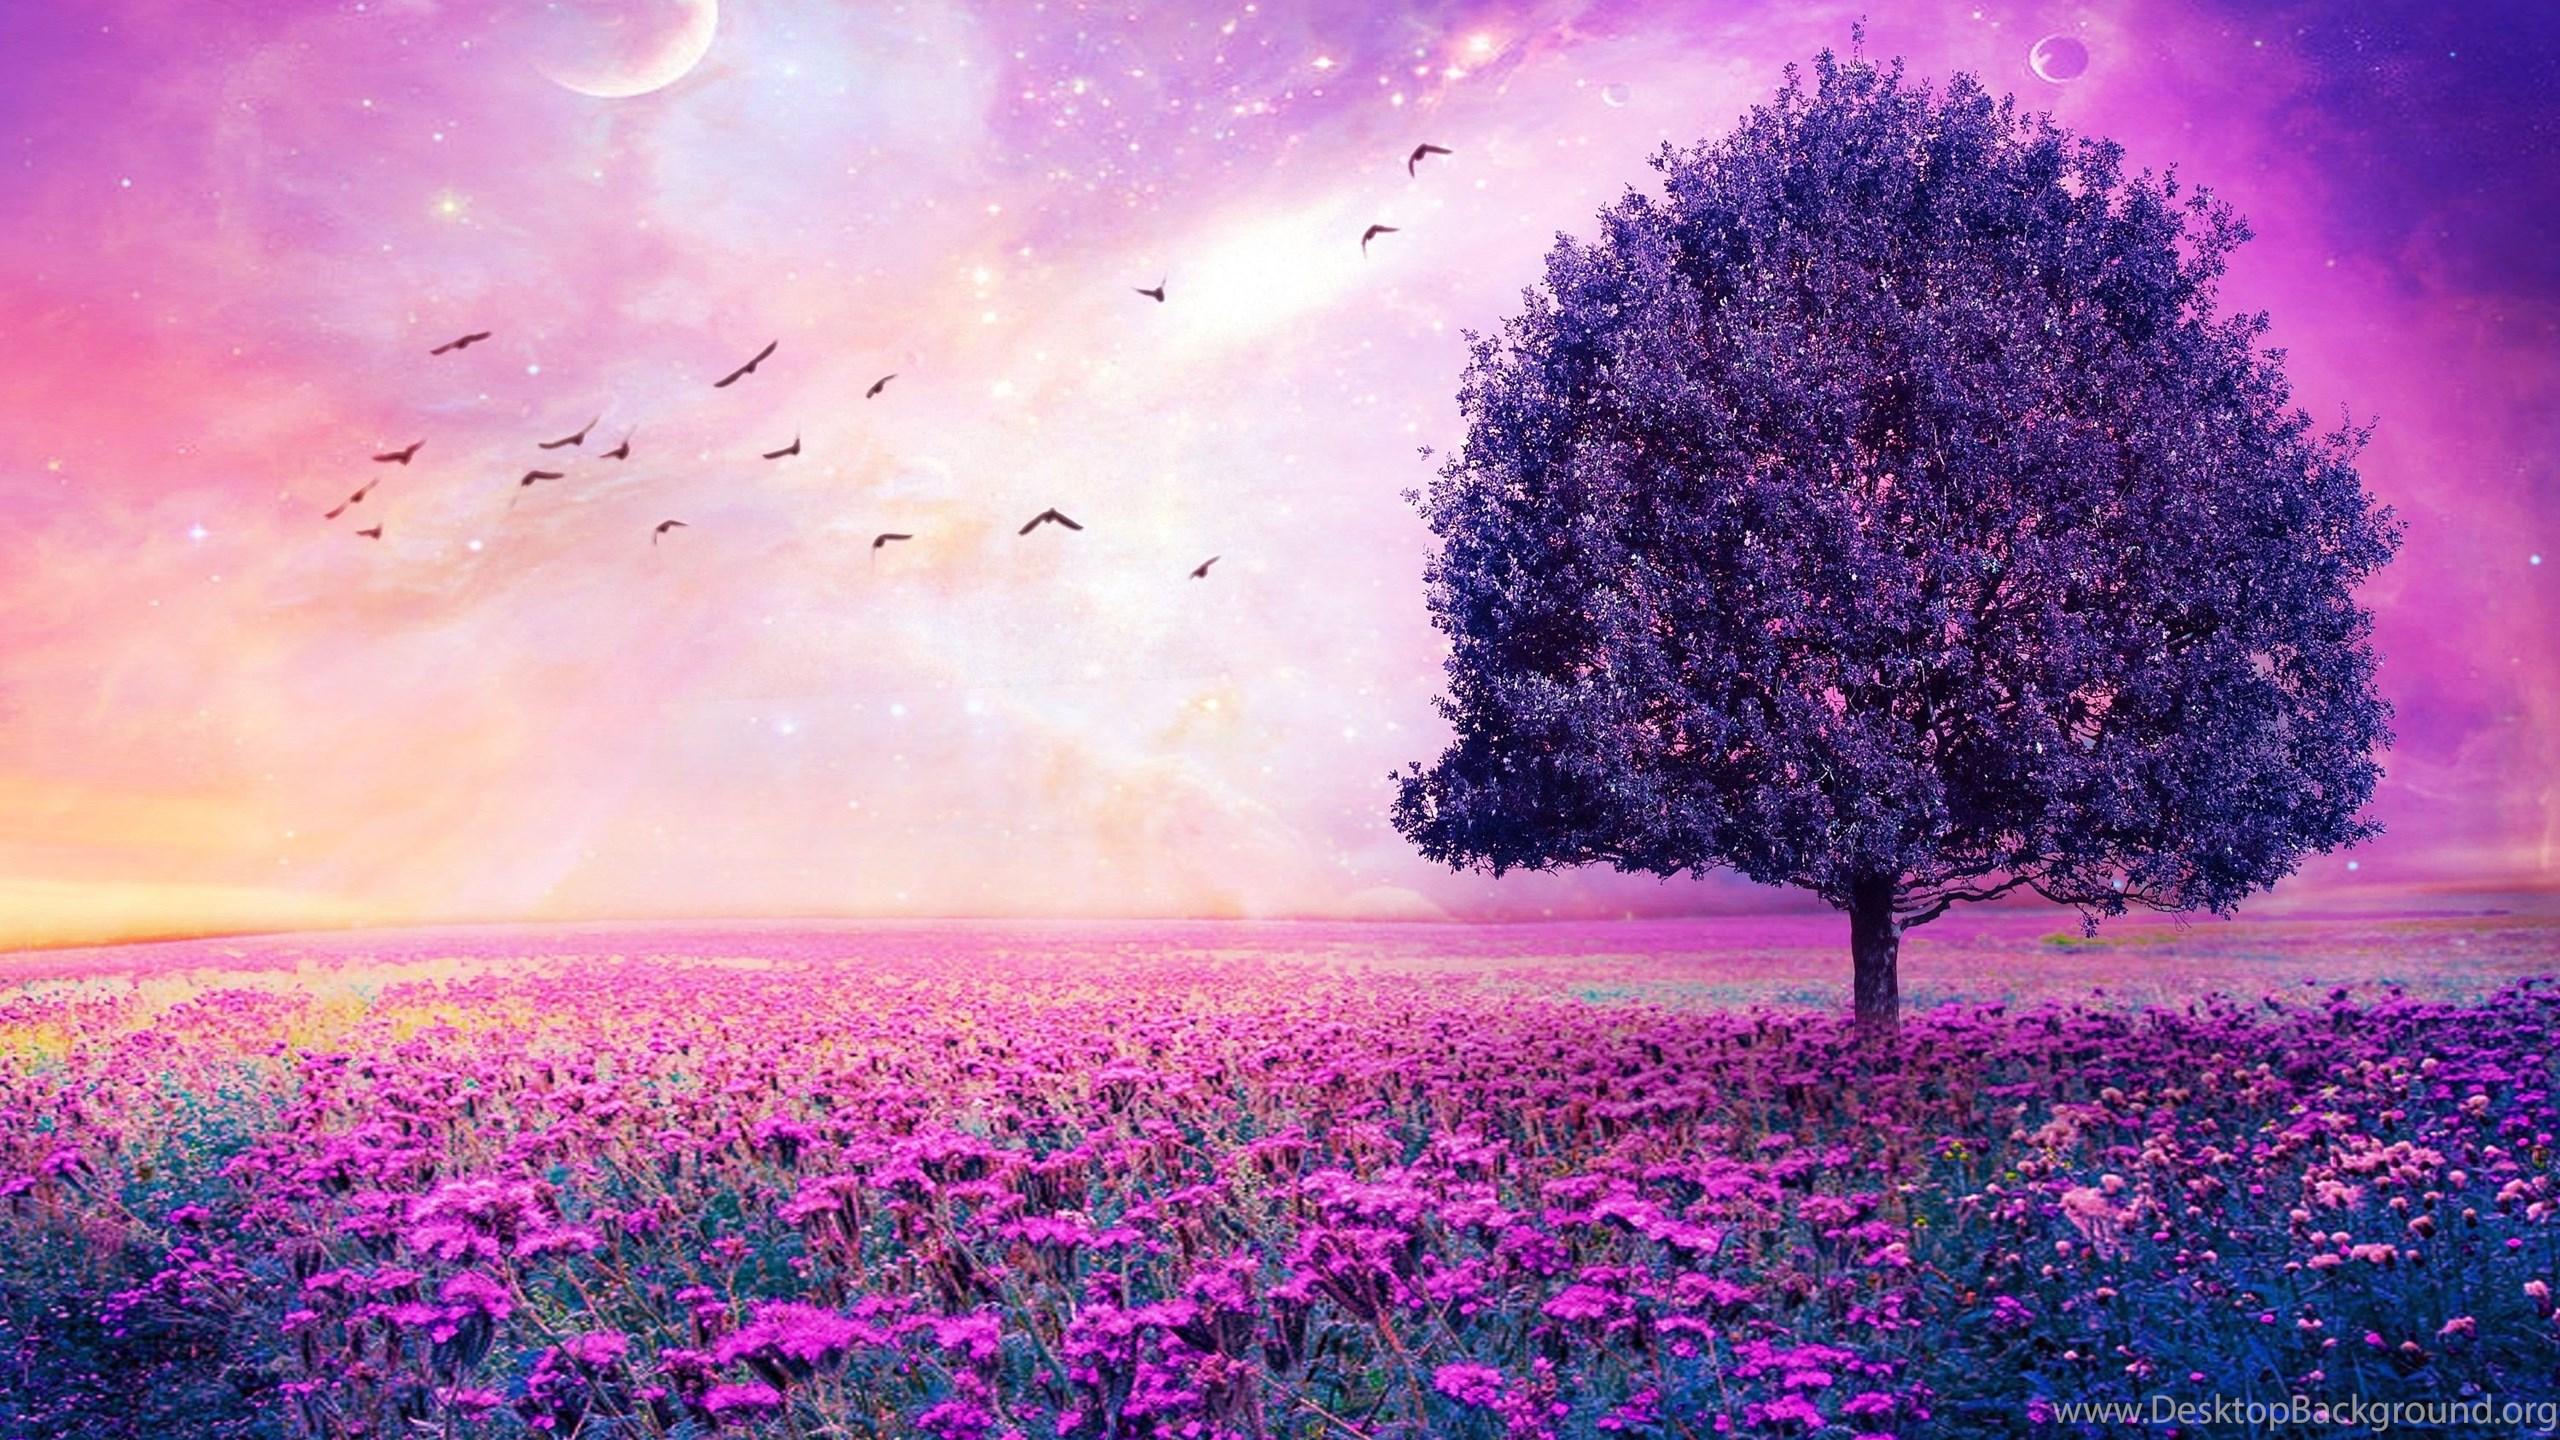 Tree And Purple Flowers Landscape 3D Art HD Wallpaper. Desktop